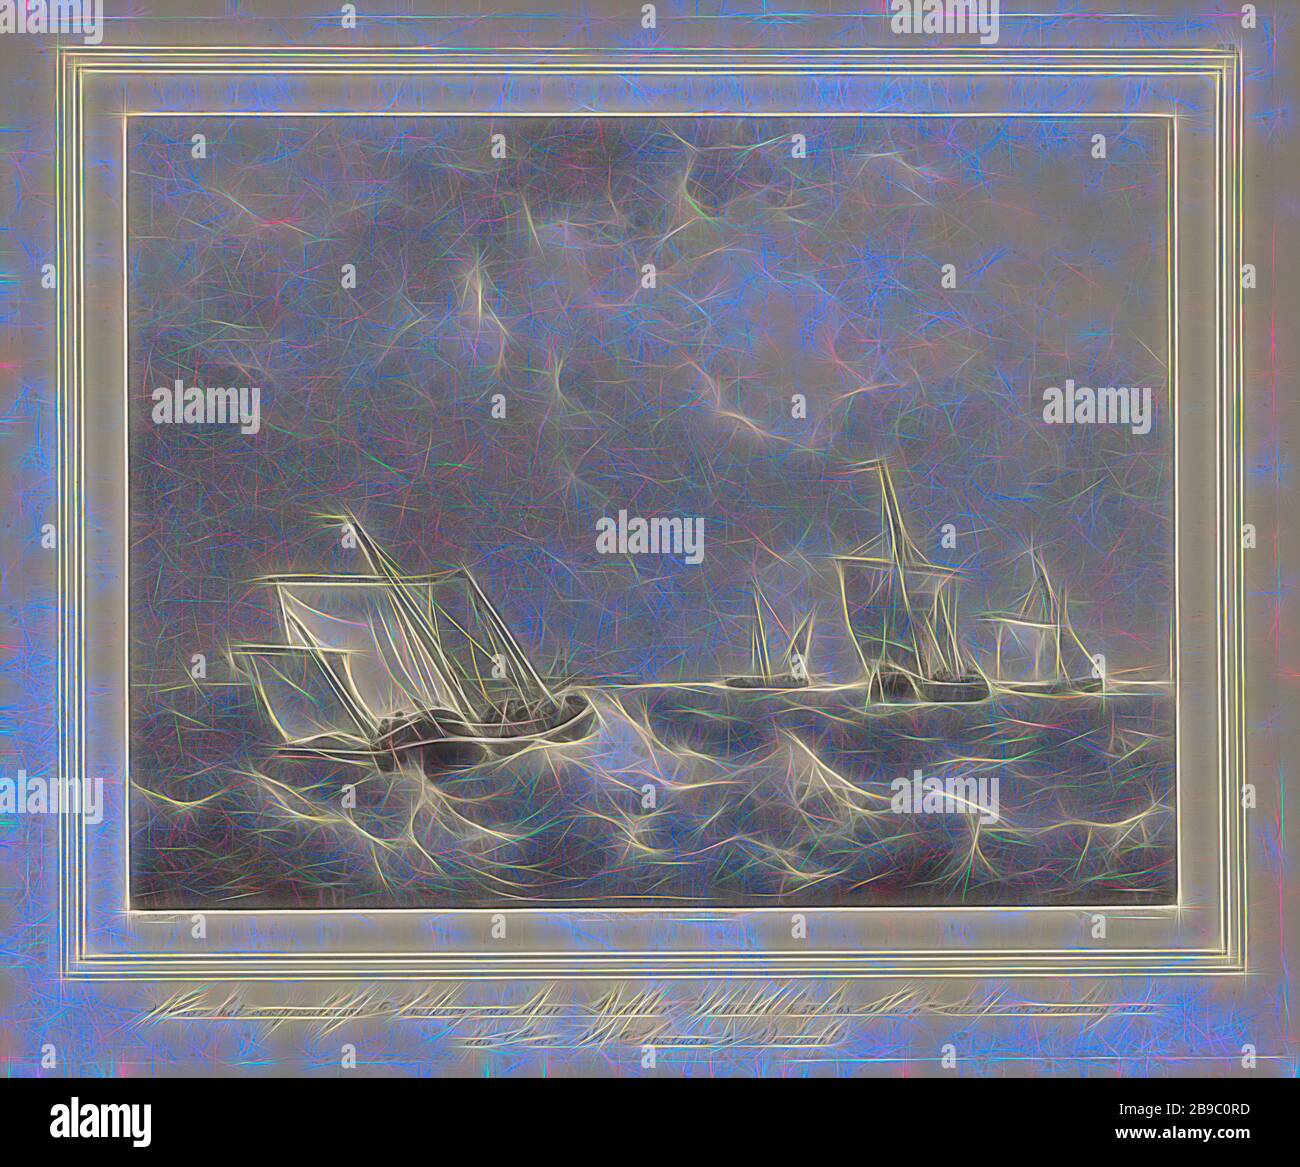 Bateaux par temps turbulent, les bateaux de voile se trouvent en diagonale sur les vagues. A l'horizon un port, voilier, bateau à voile, tempête en mer, Leonard de Koningh (mentionné sur l'objet), Dordrecht, 1822 - 1845, papier, h 435 mm × W 550 mm, réinventé par Gibon, design de glanissement chaleureux et gai de luminosité et de rayons de lumière radiance. L'art classique réinventé avec une touche moderne. La photographie inspirée du futurisme, qui embrasse l'énergie dynamique de la technologie moderne, du mouvement, de la vitesse et révolutionne la culture. Banque D'Images